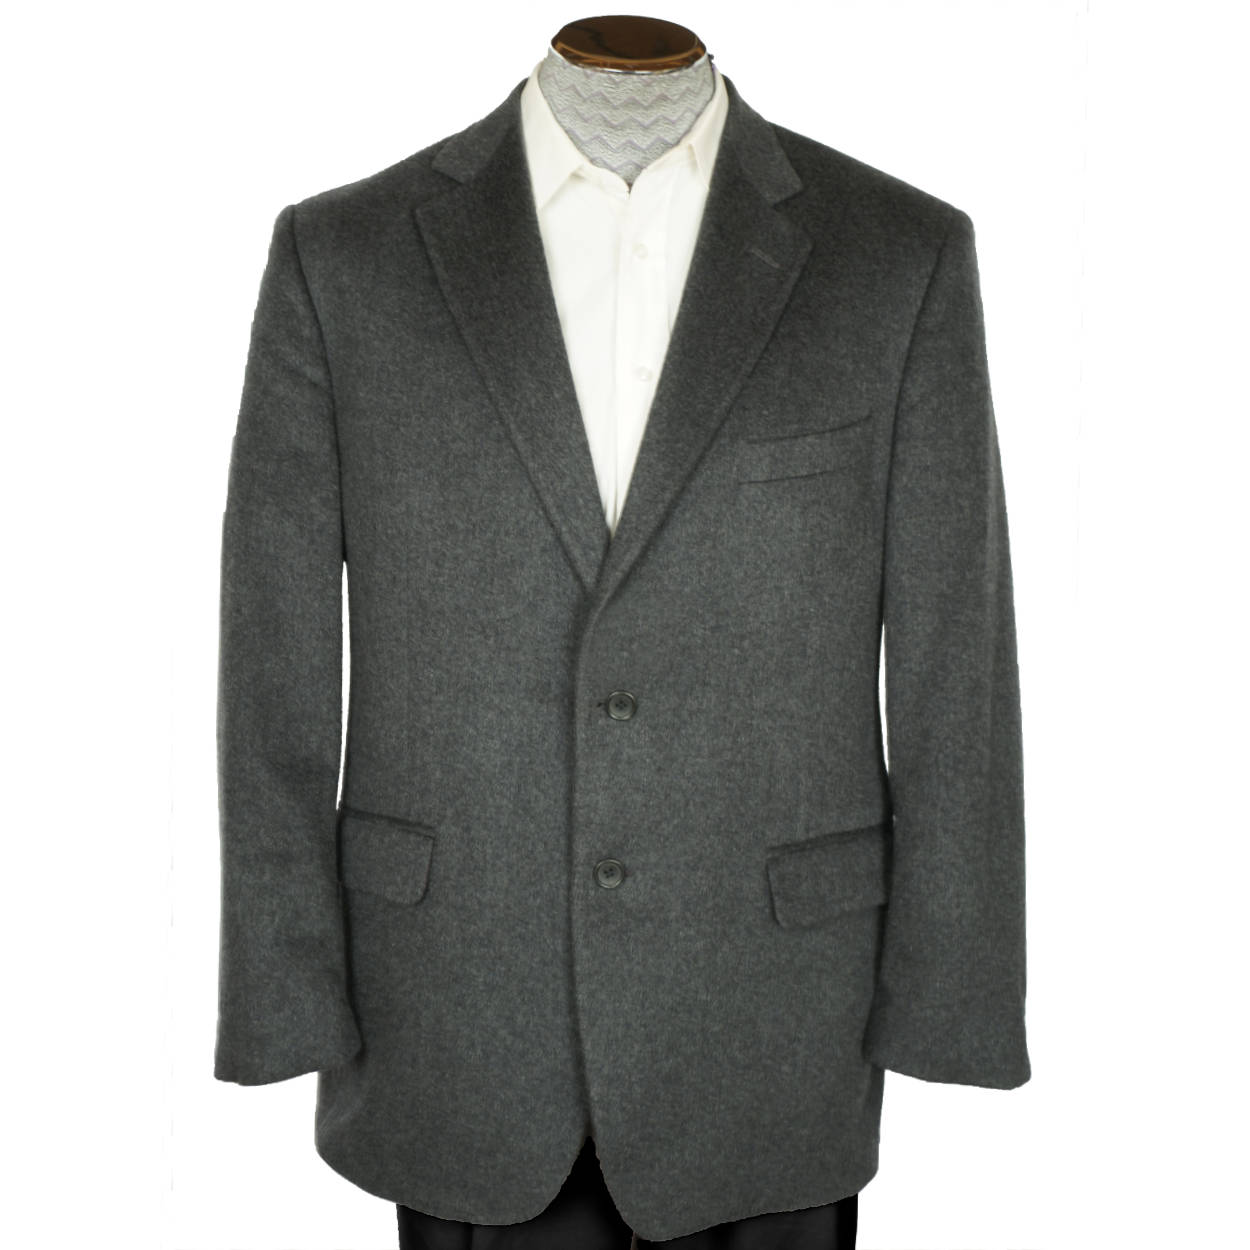 Raffinaderij Inzichtelijk microscopisch Brooks Brothers 346 Blazer 100% Cashmere Suit Jacket Sport Coat Size 42  Regular